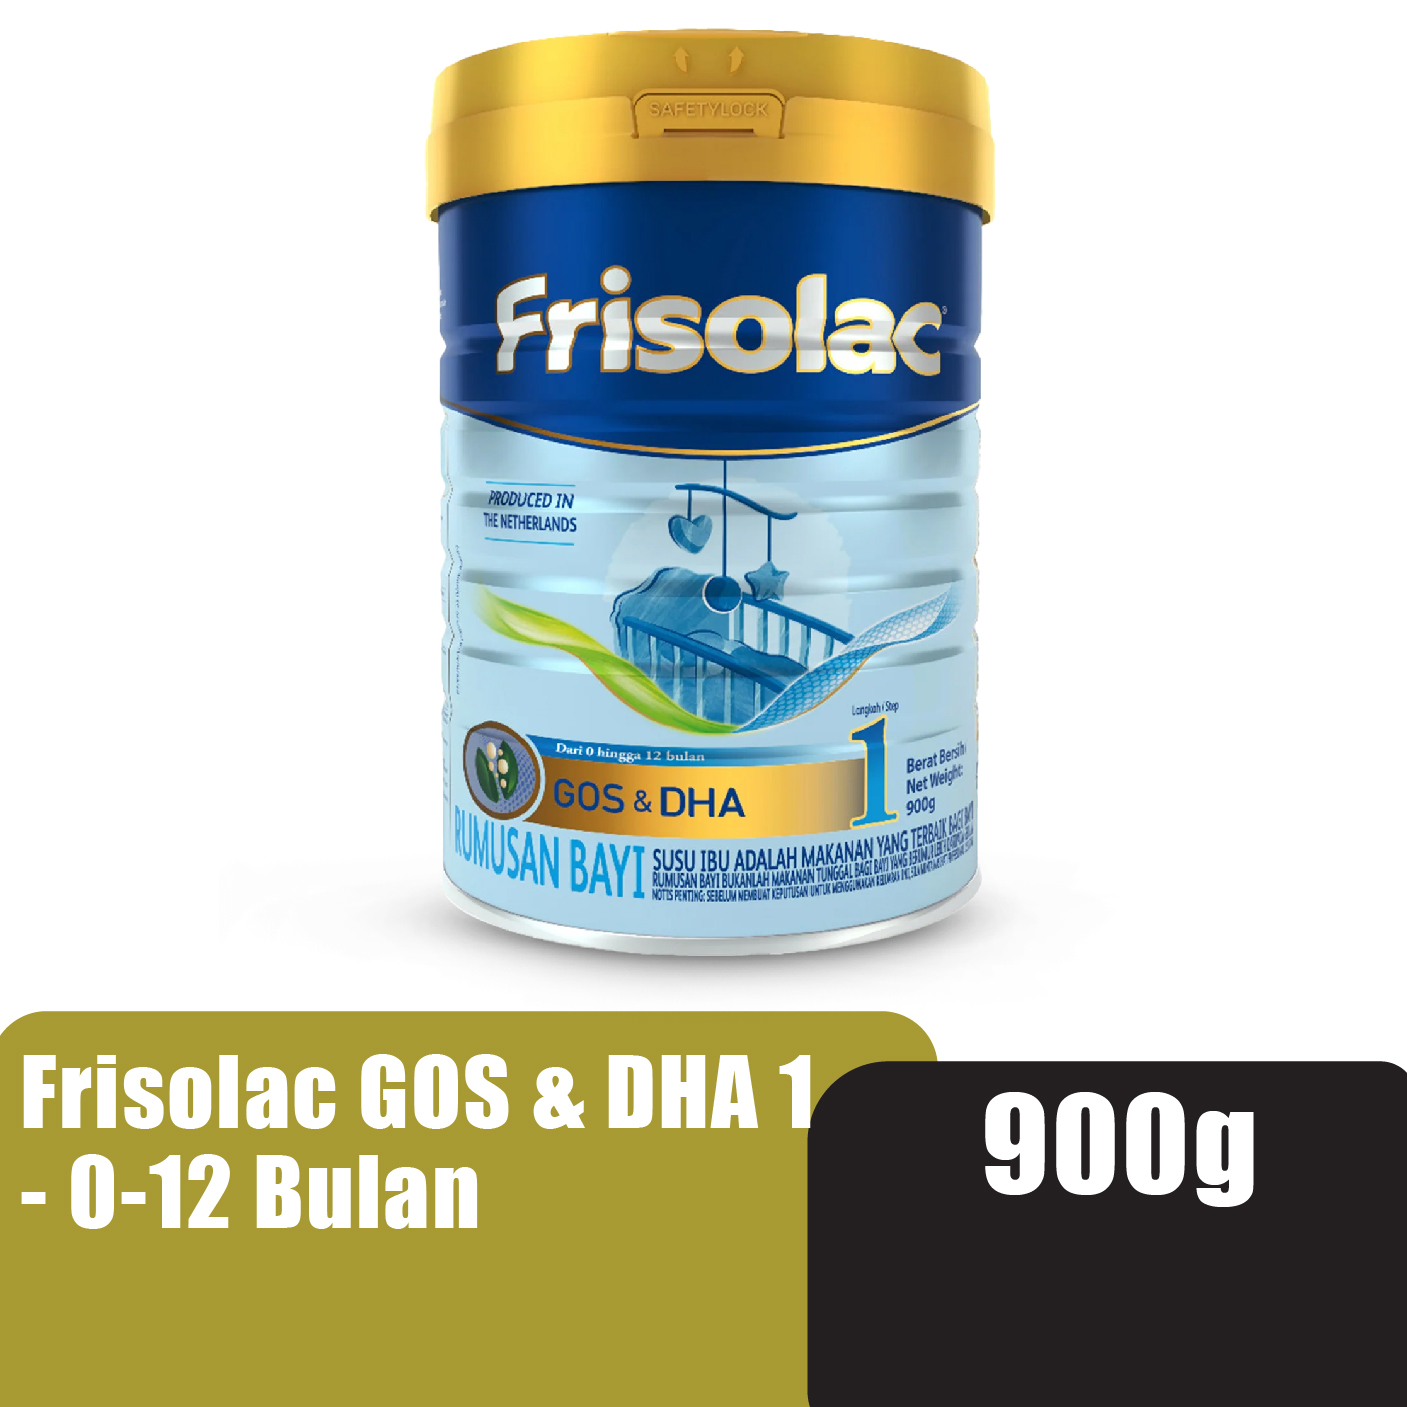 FRISOLAC Gos & Dha Step 1 (0-12 Bulan) Milk Powder 900g - Susu Tepung Infant / Baby Milk Formula 奶粉